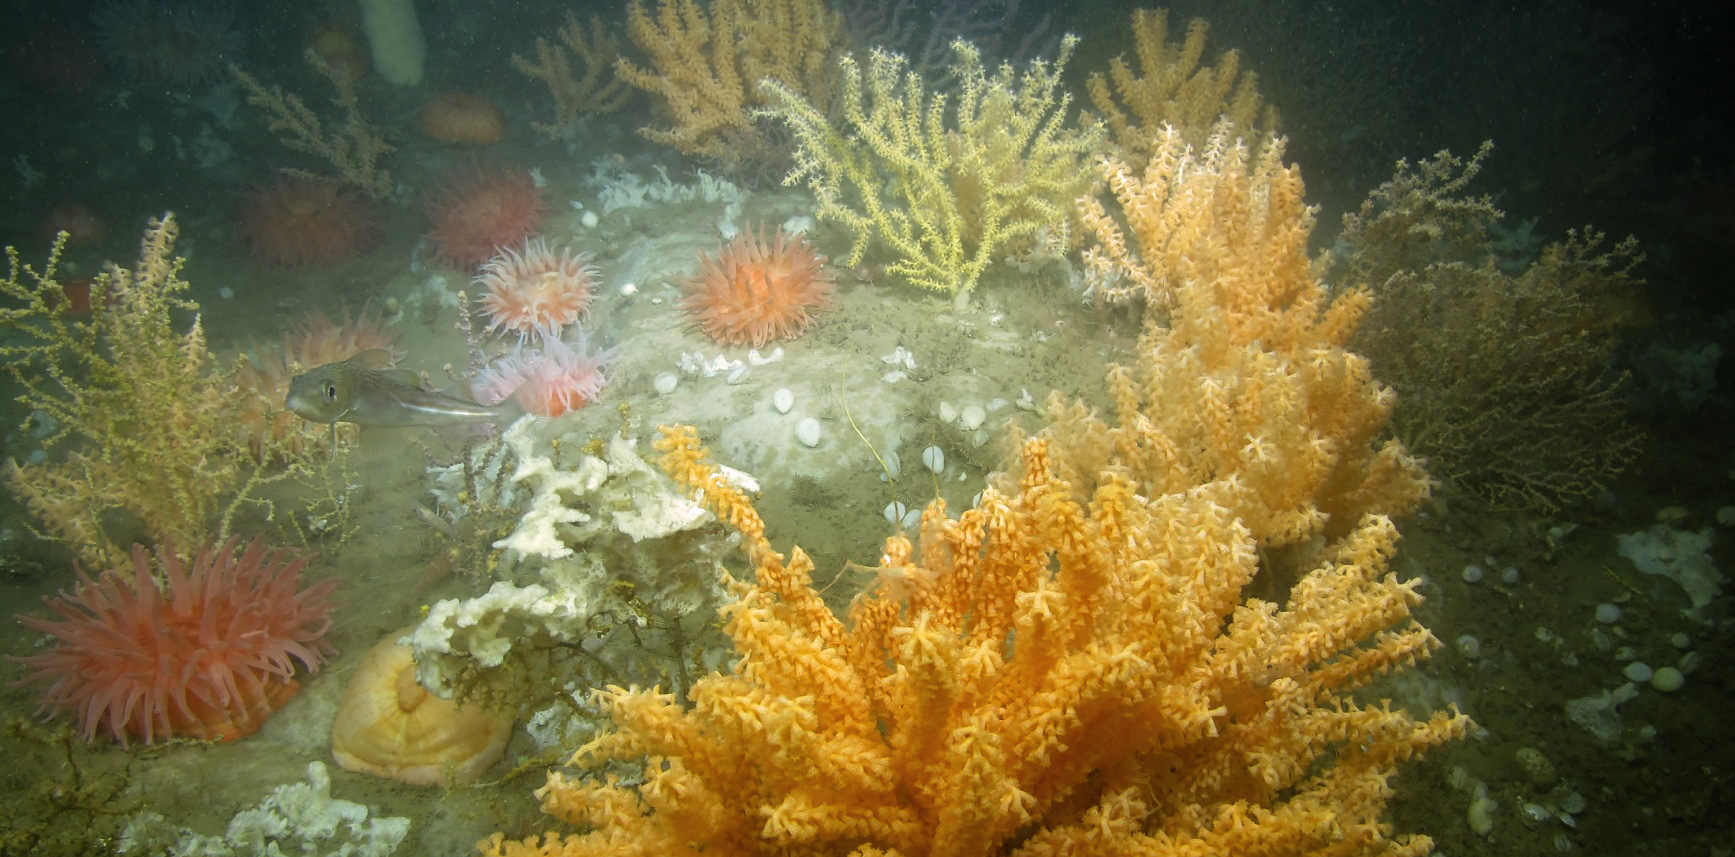 Deep-sea coral garden habitat in Western Jordan Basin, Gulf of Maine